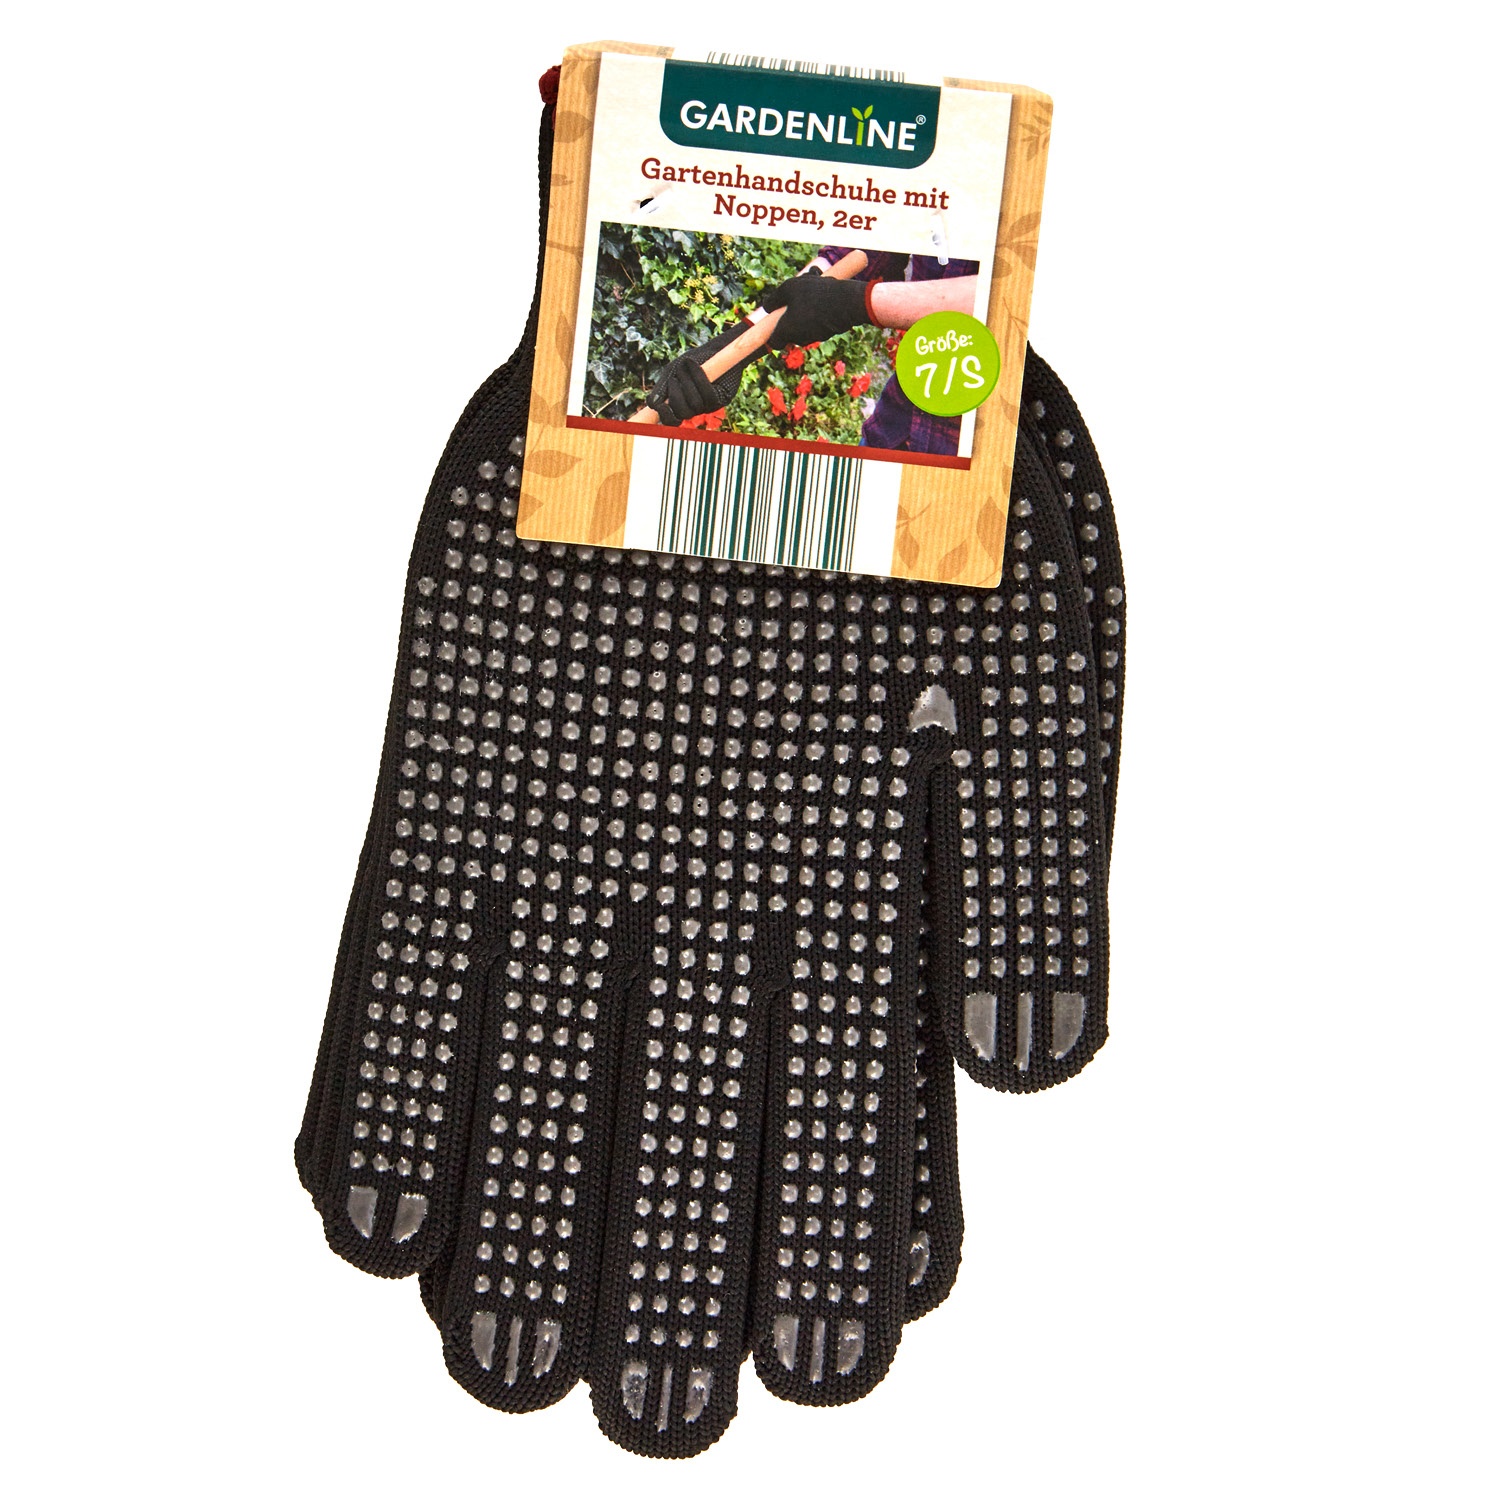 GARDENLINE® Gartenhandschuhe mit Noppen, 2 Paar